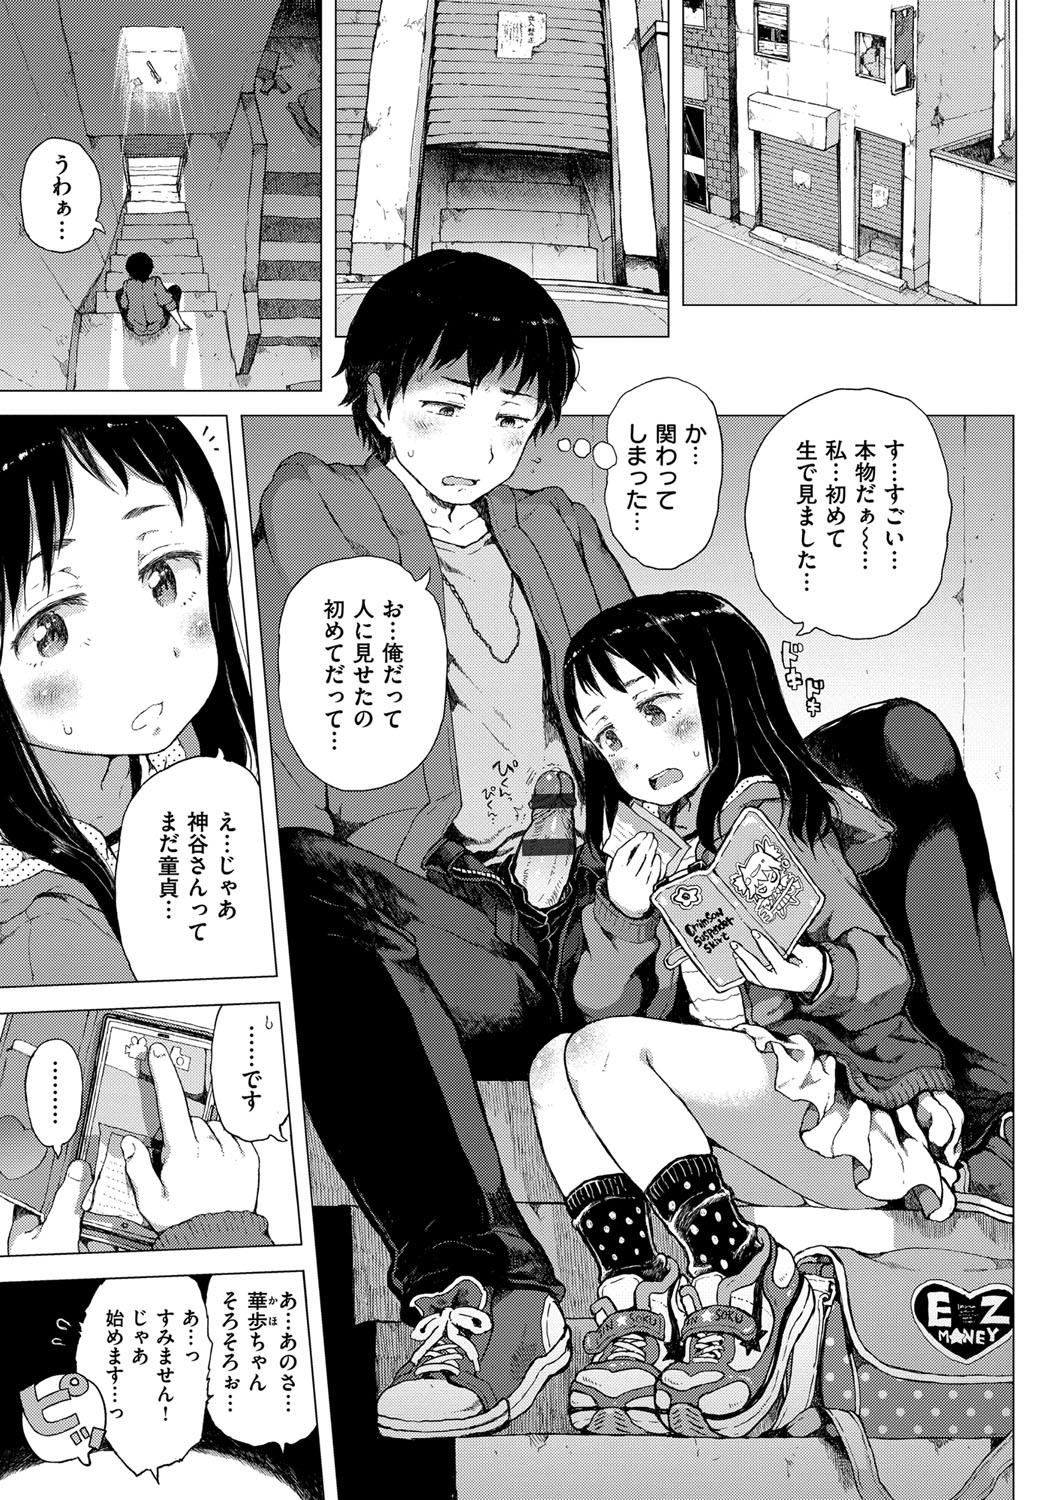 Spying Dakara Kami-sama, Boku ni shika Mienai Chiisana Koibito o Kudasai. Yanks Featured - Page 9